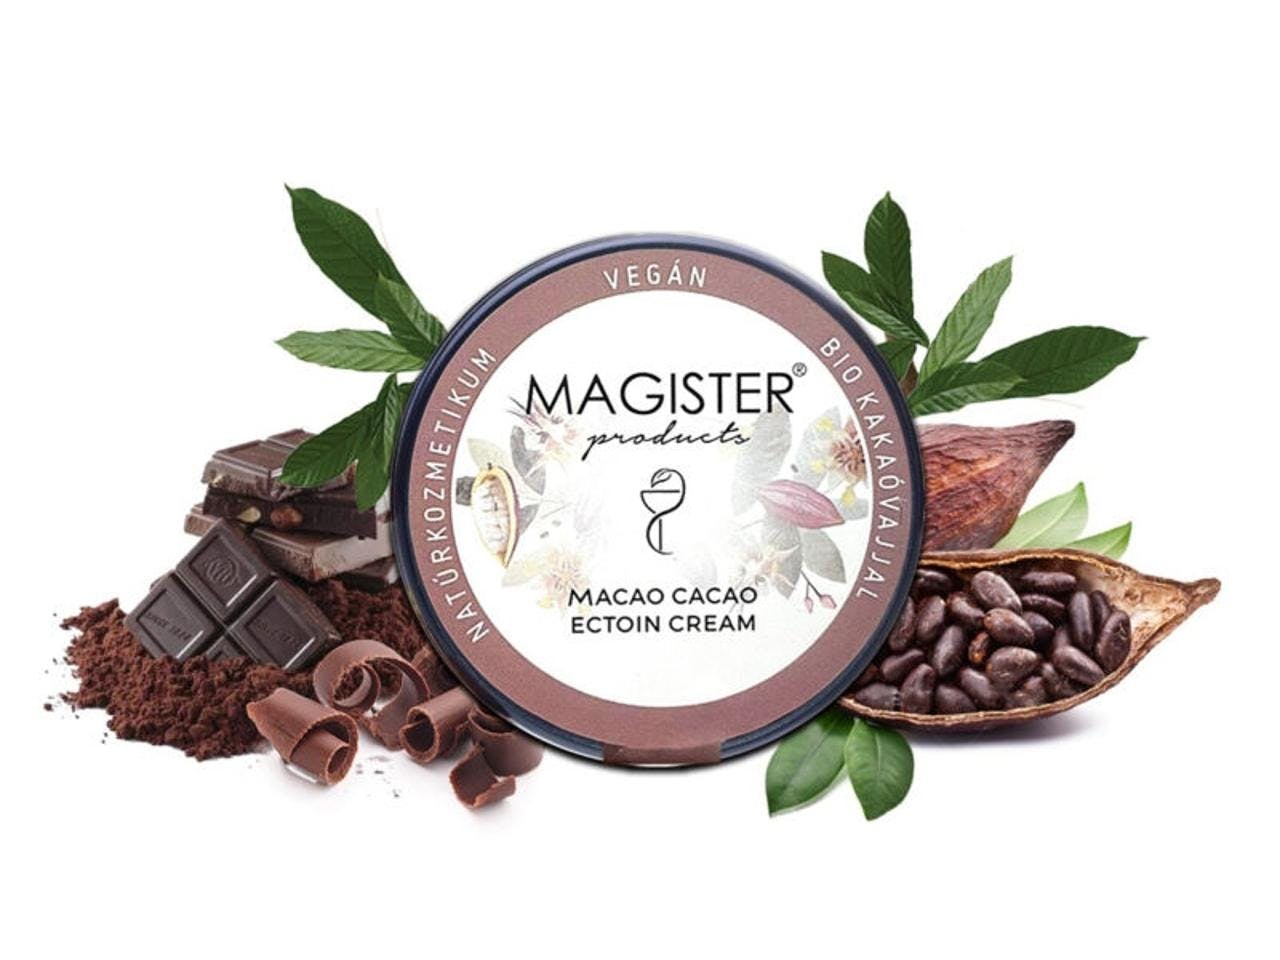 Magister Macao Cacao Ectoin Cream